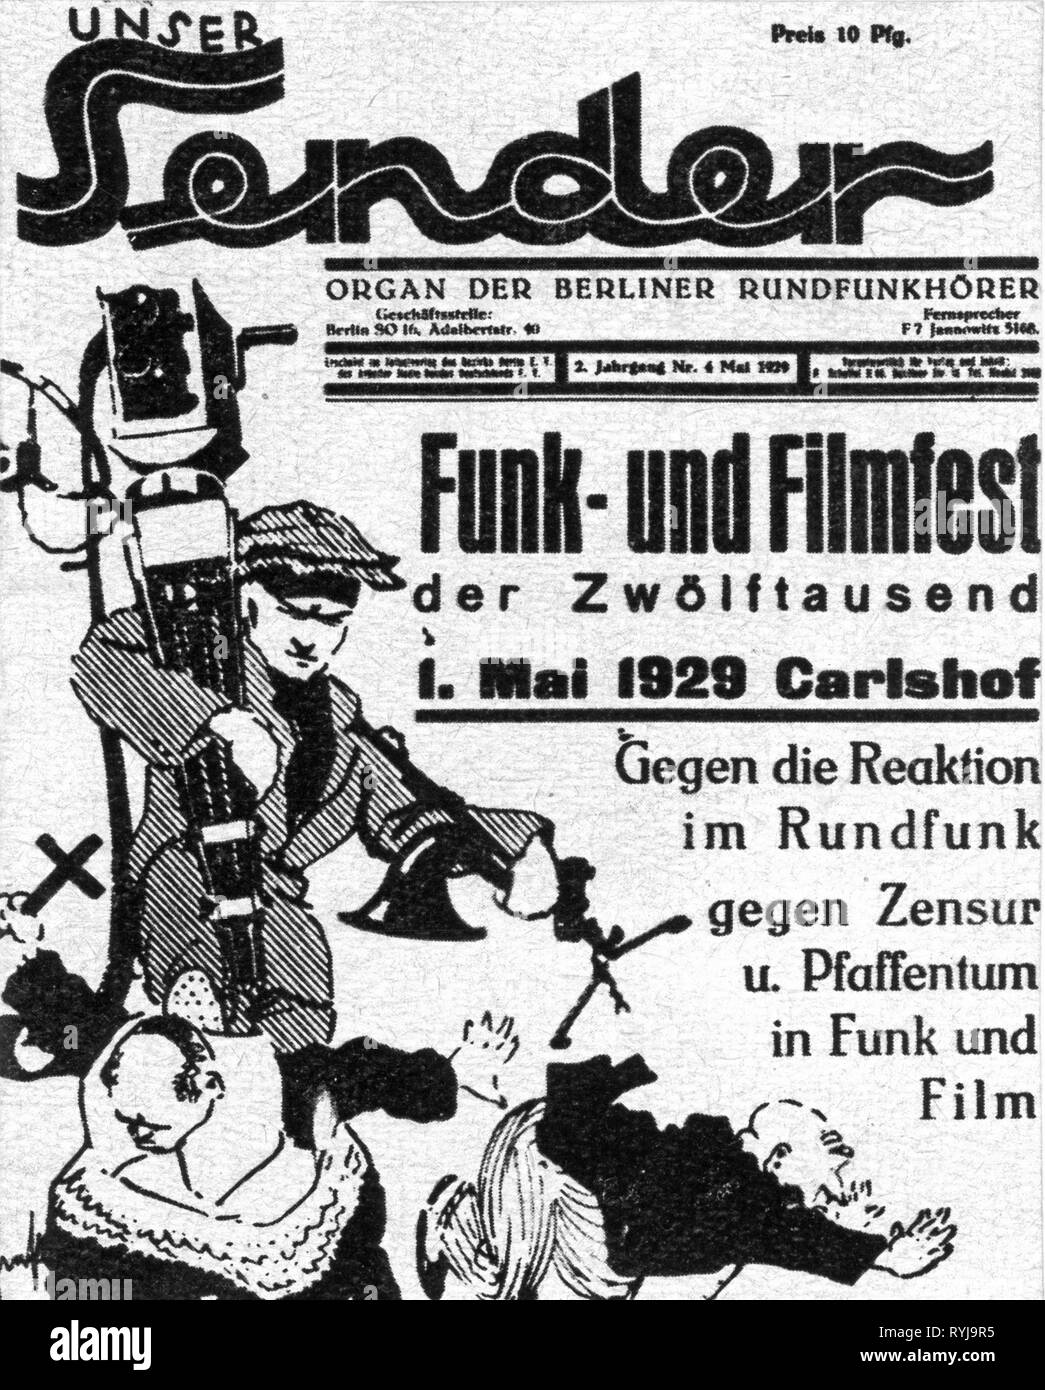 Politica, il movimento operaio, propaganda del lavoratore Alleanza Radio Germania, la rivista "Unser mittente', coperchio, numero 4, Berlino, 4.5.1929, Additional-Rights-Clearance-Info-Not-Available Foto Stock